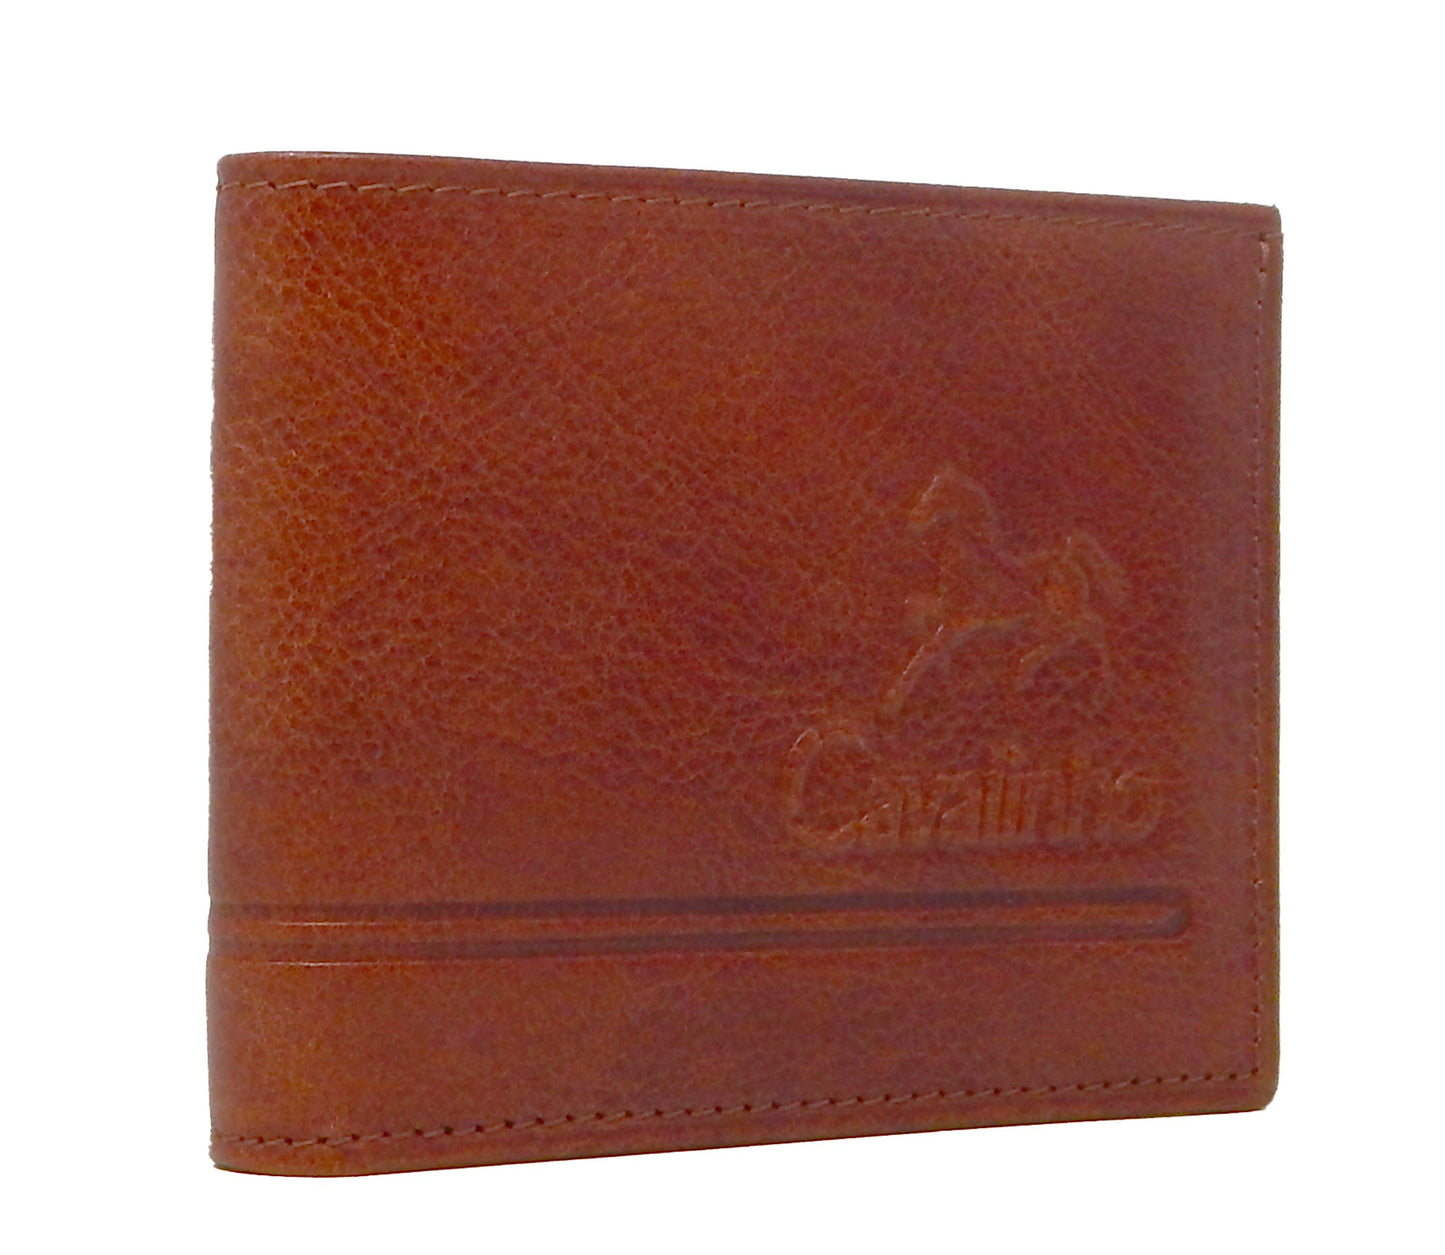 #color_ SaddleBrown | Cavalinho Men's Trifold Leather Wallet - SaddleBrown - 28610523.13.99_2